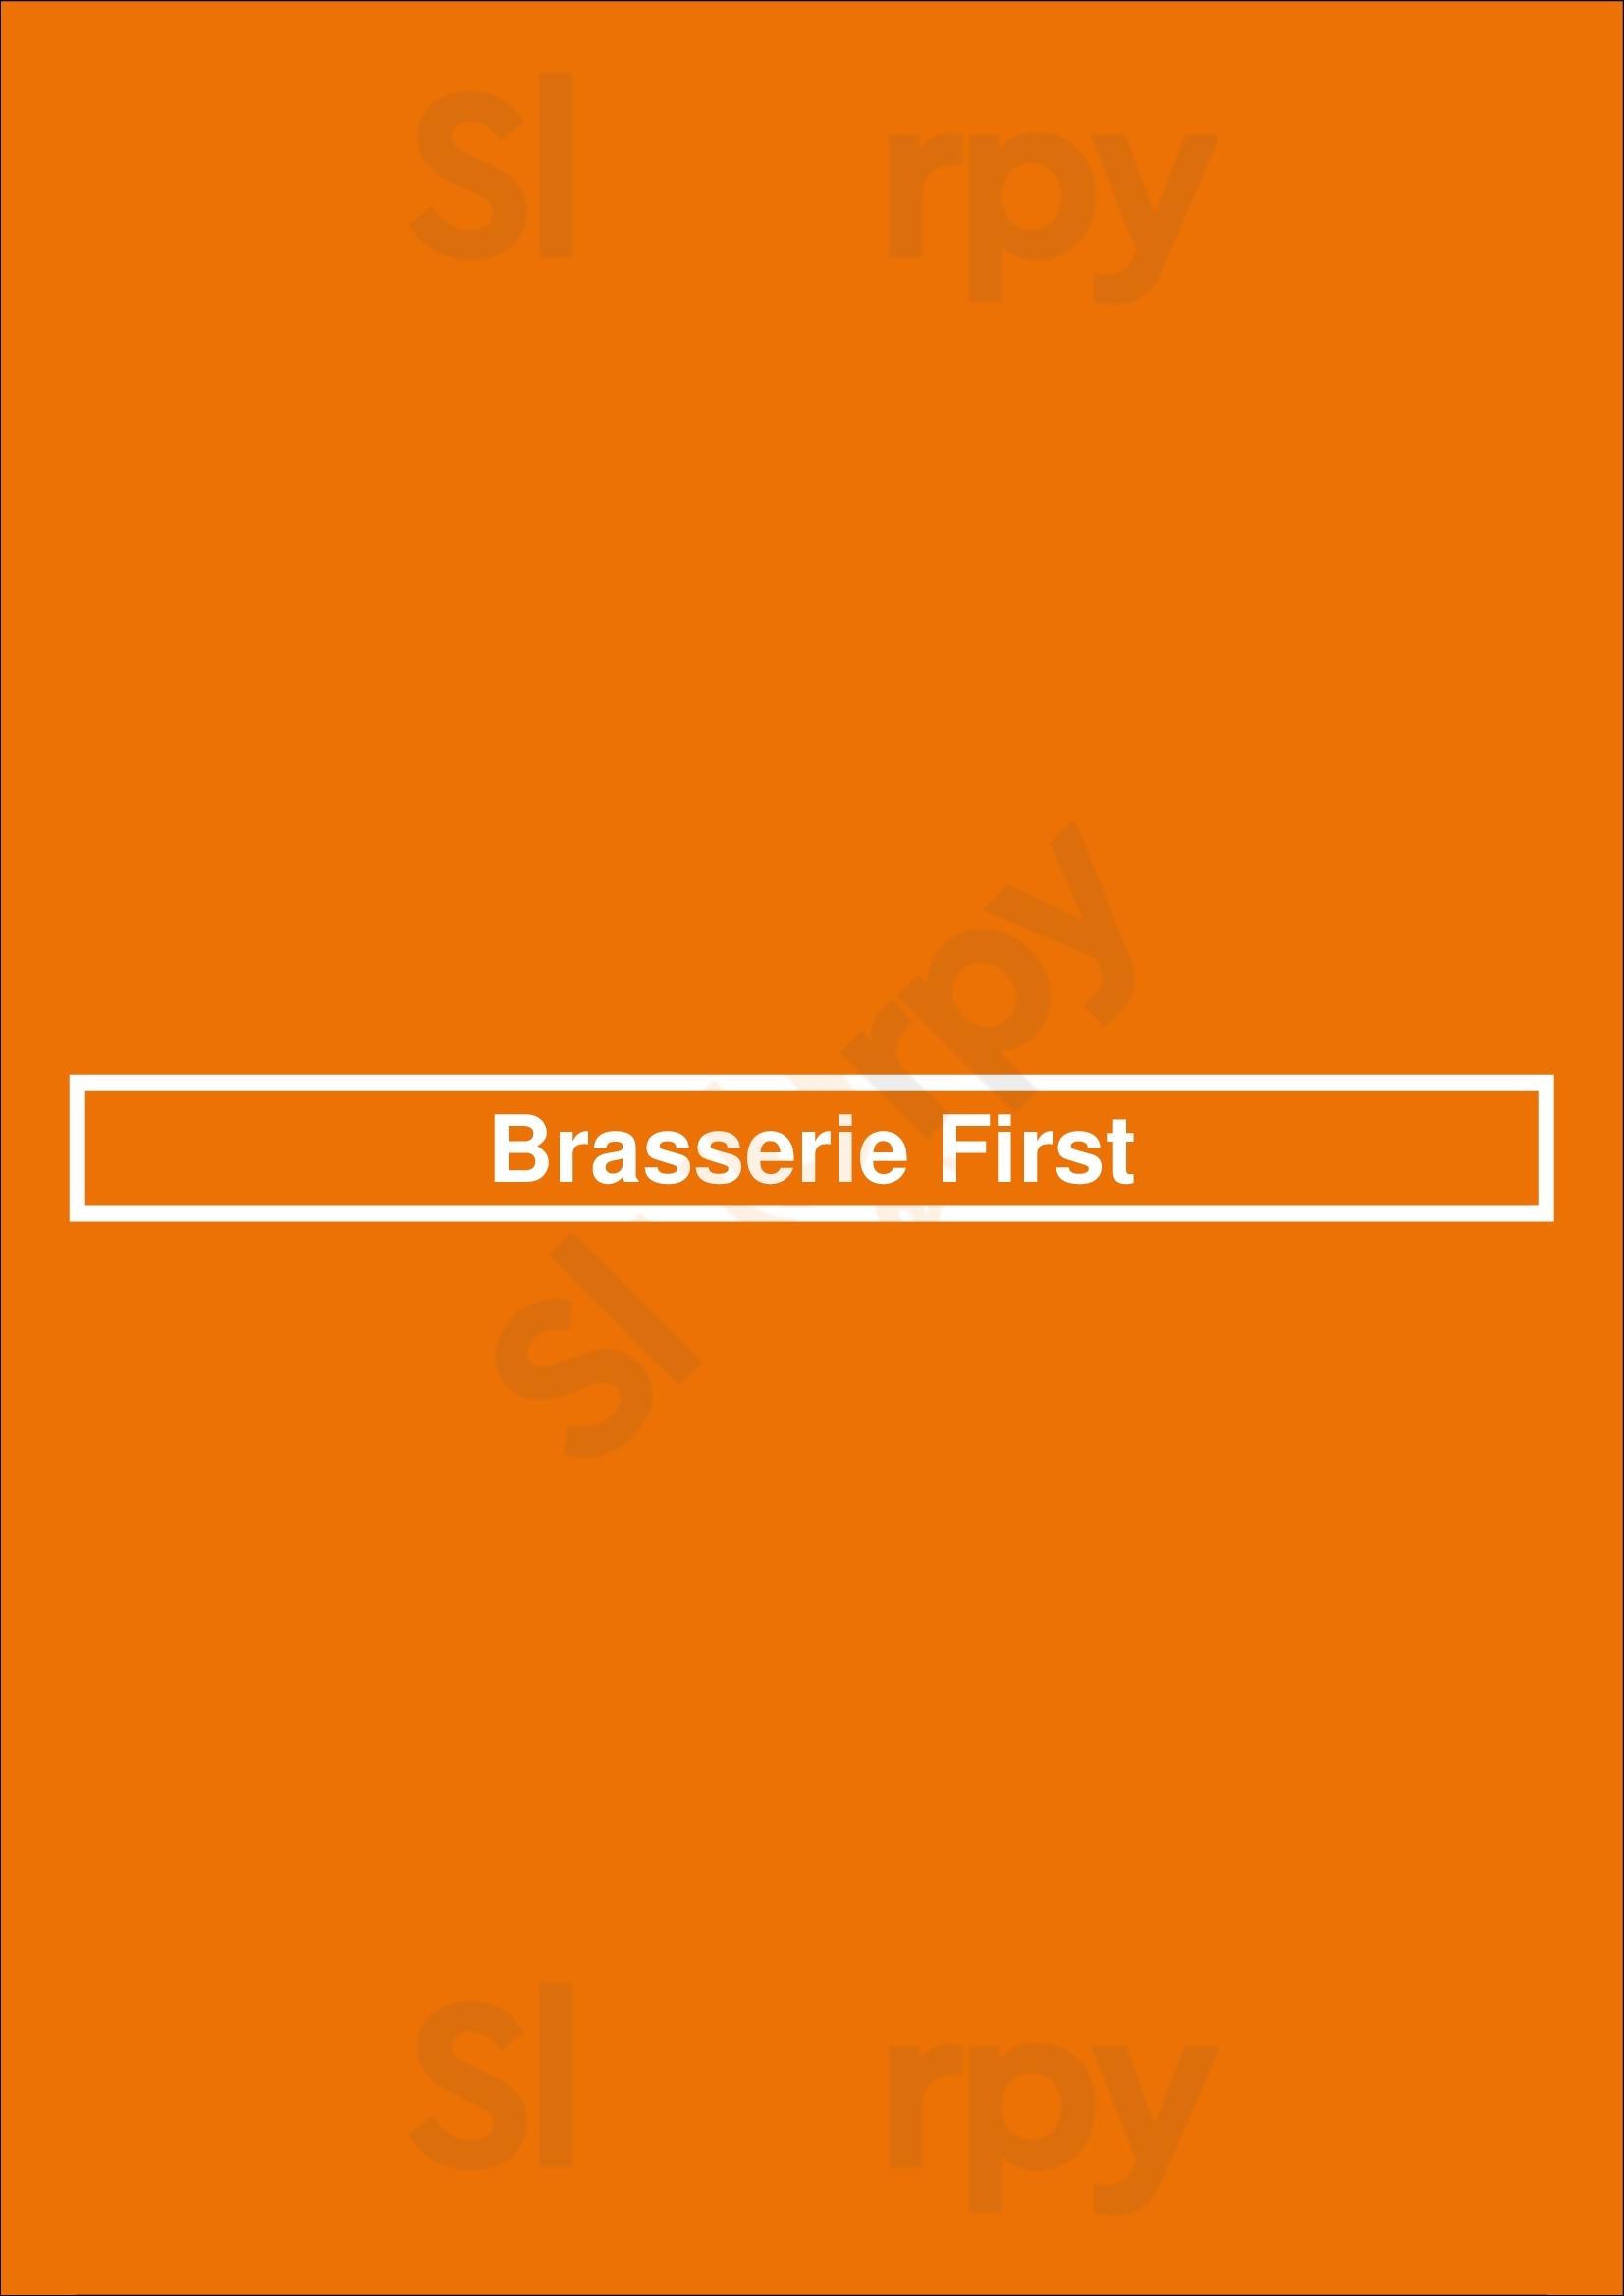 Brasserie First Zeist Menu - 1